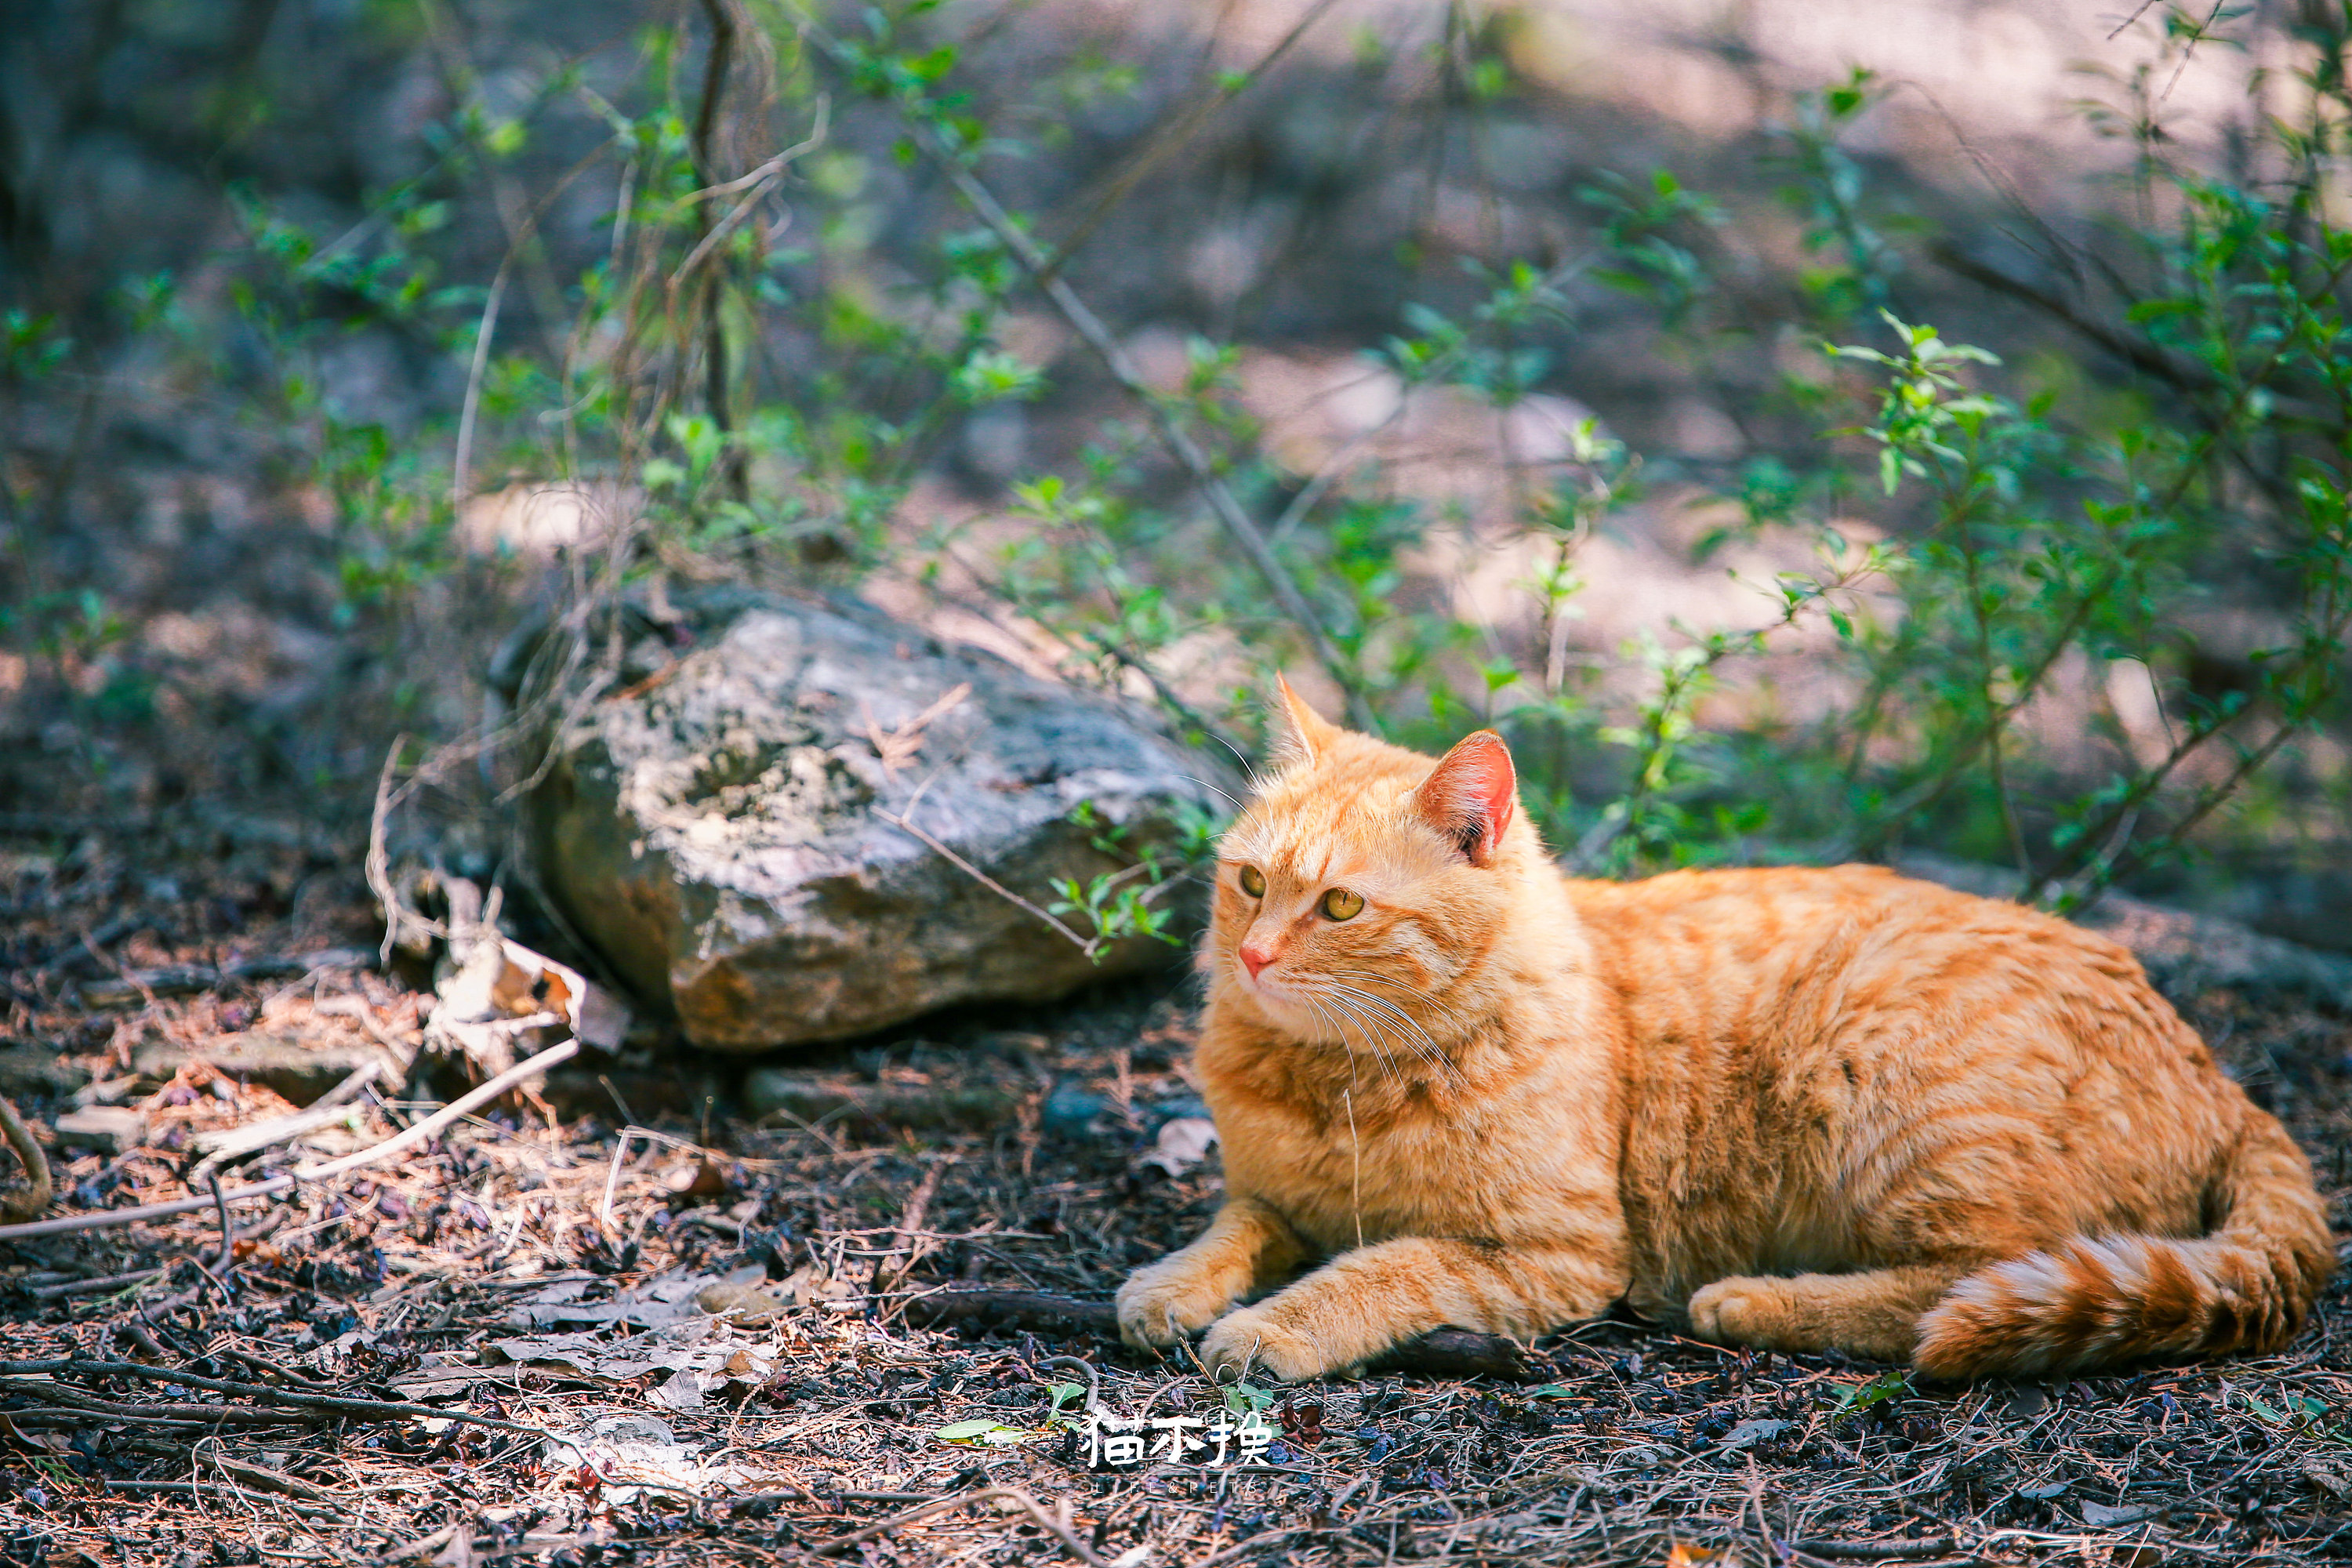 美洲山猫 库存图片. 图片 包括有 橙色, 食肉动物, 一个, 纵向, 美洲狮, 猎人, 视图, 野生生物 - 56956259